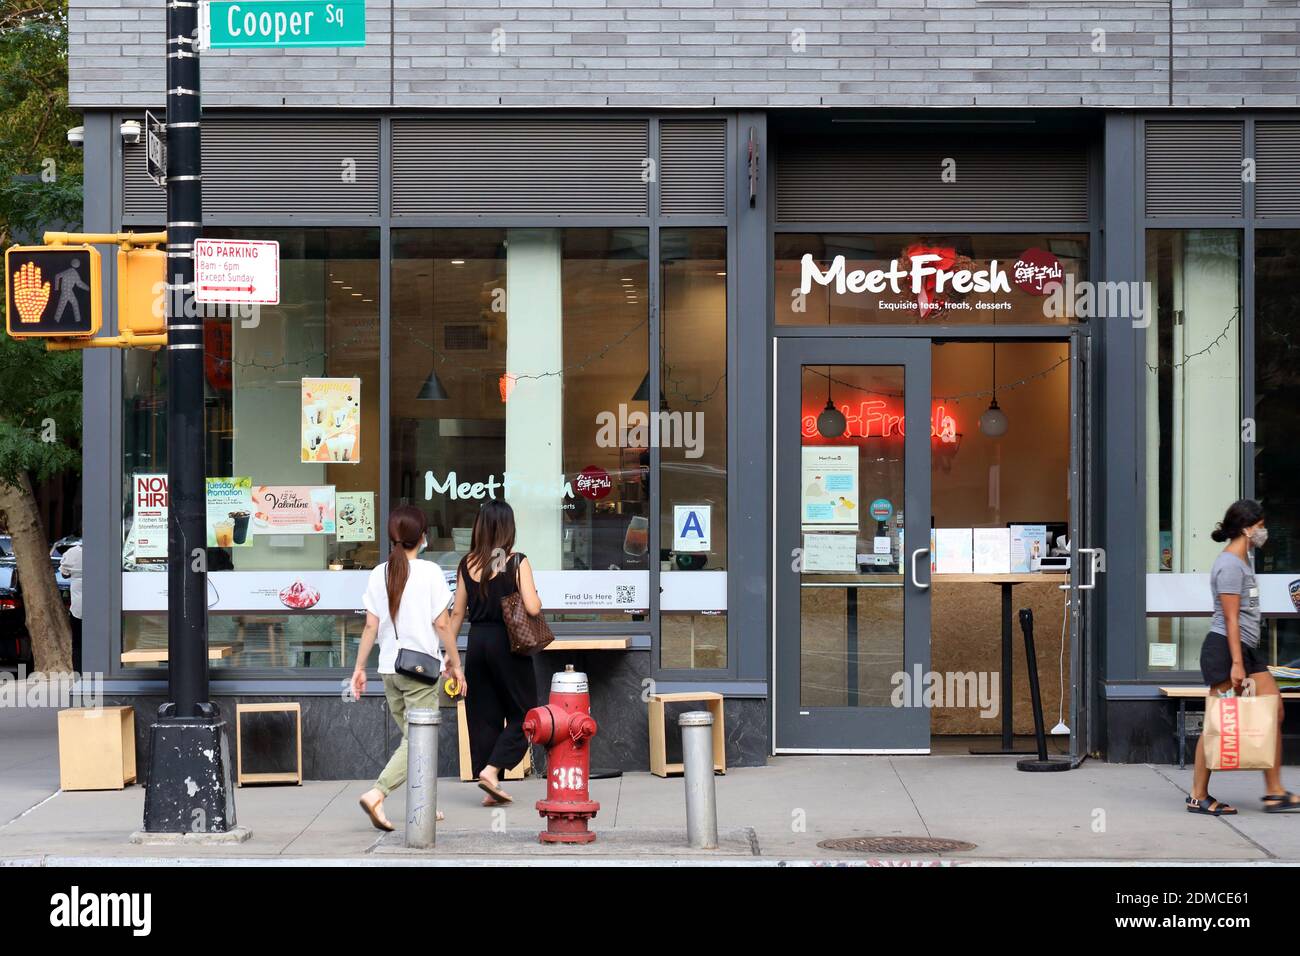 Conozca Fresh 鮮芋仙, 37 Cooper Square, Nueva York, Nueva York, Nueva York, foto del escaparate de una tienda de postres taiwanesa en el barrio East Village de Manhattan Foto de stock